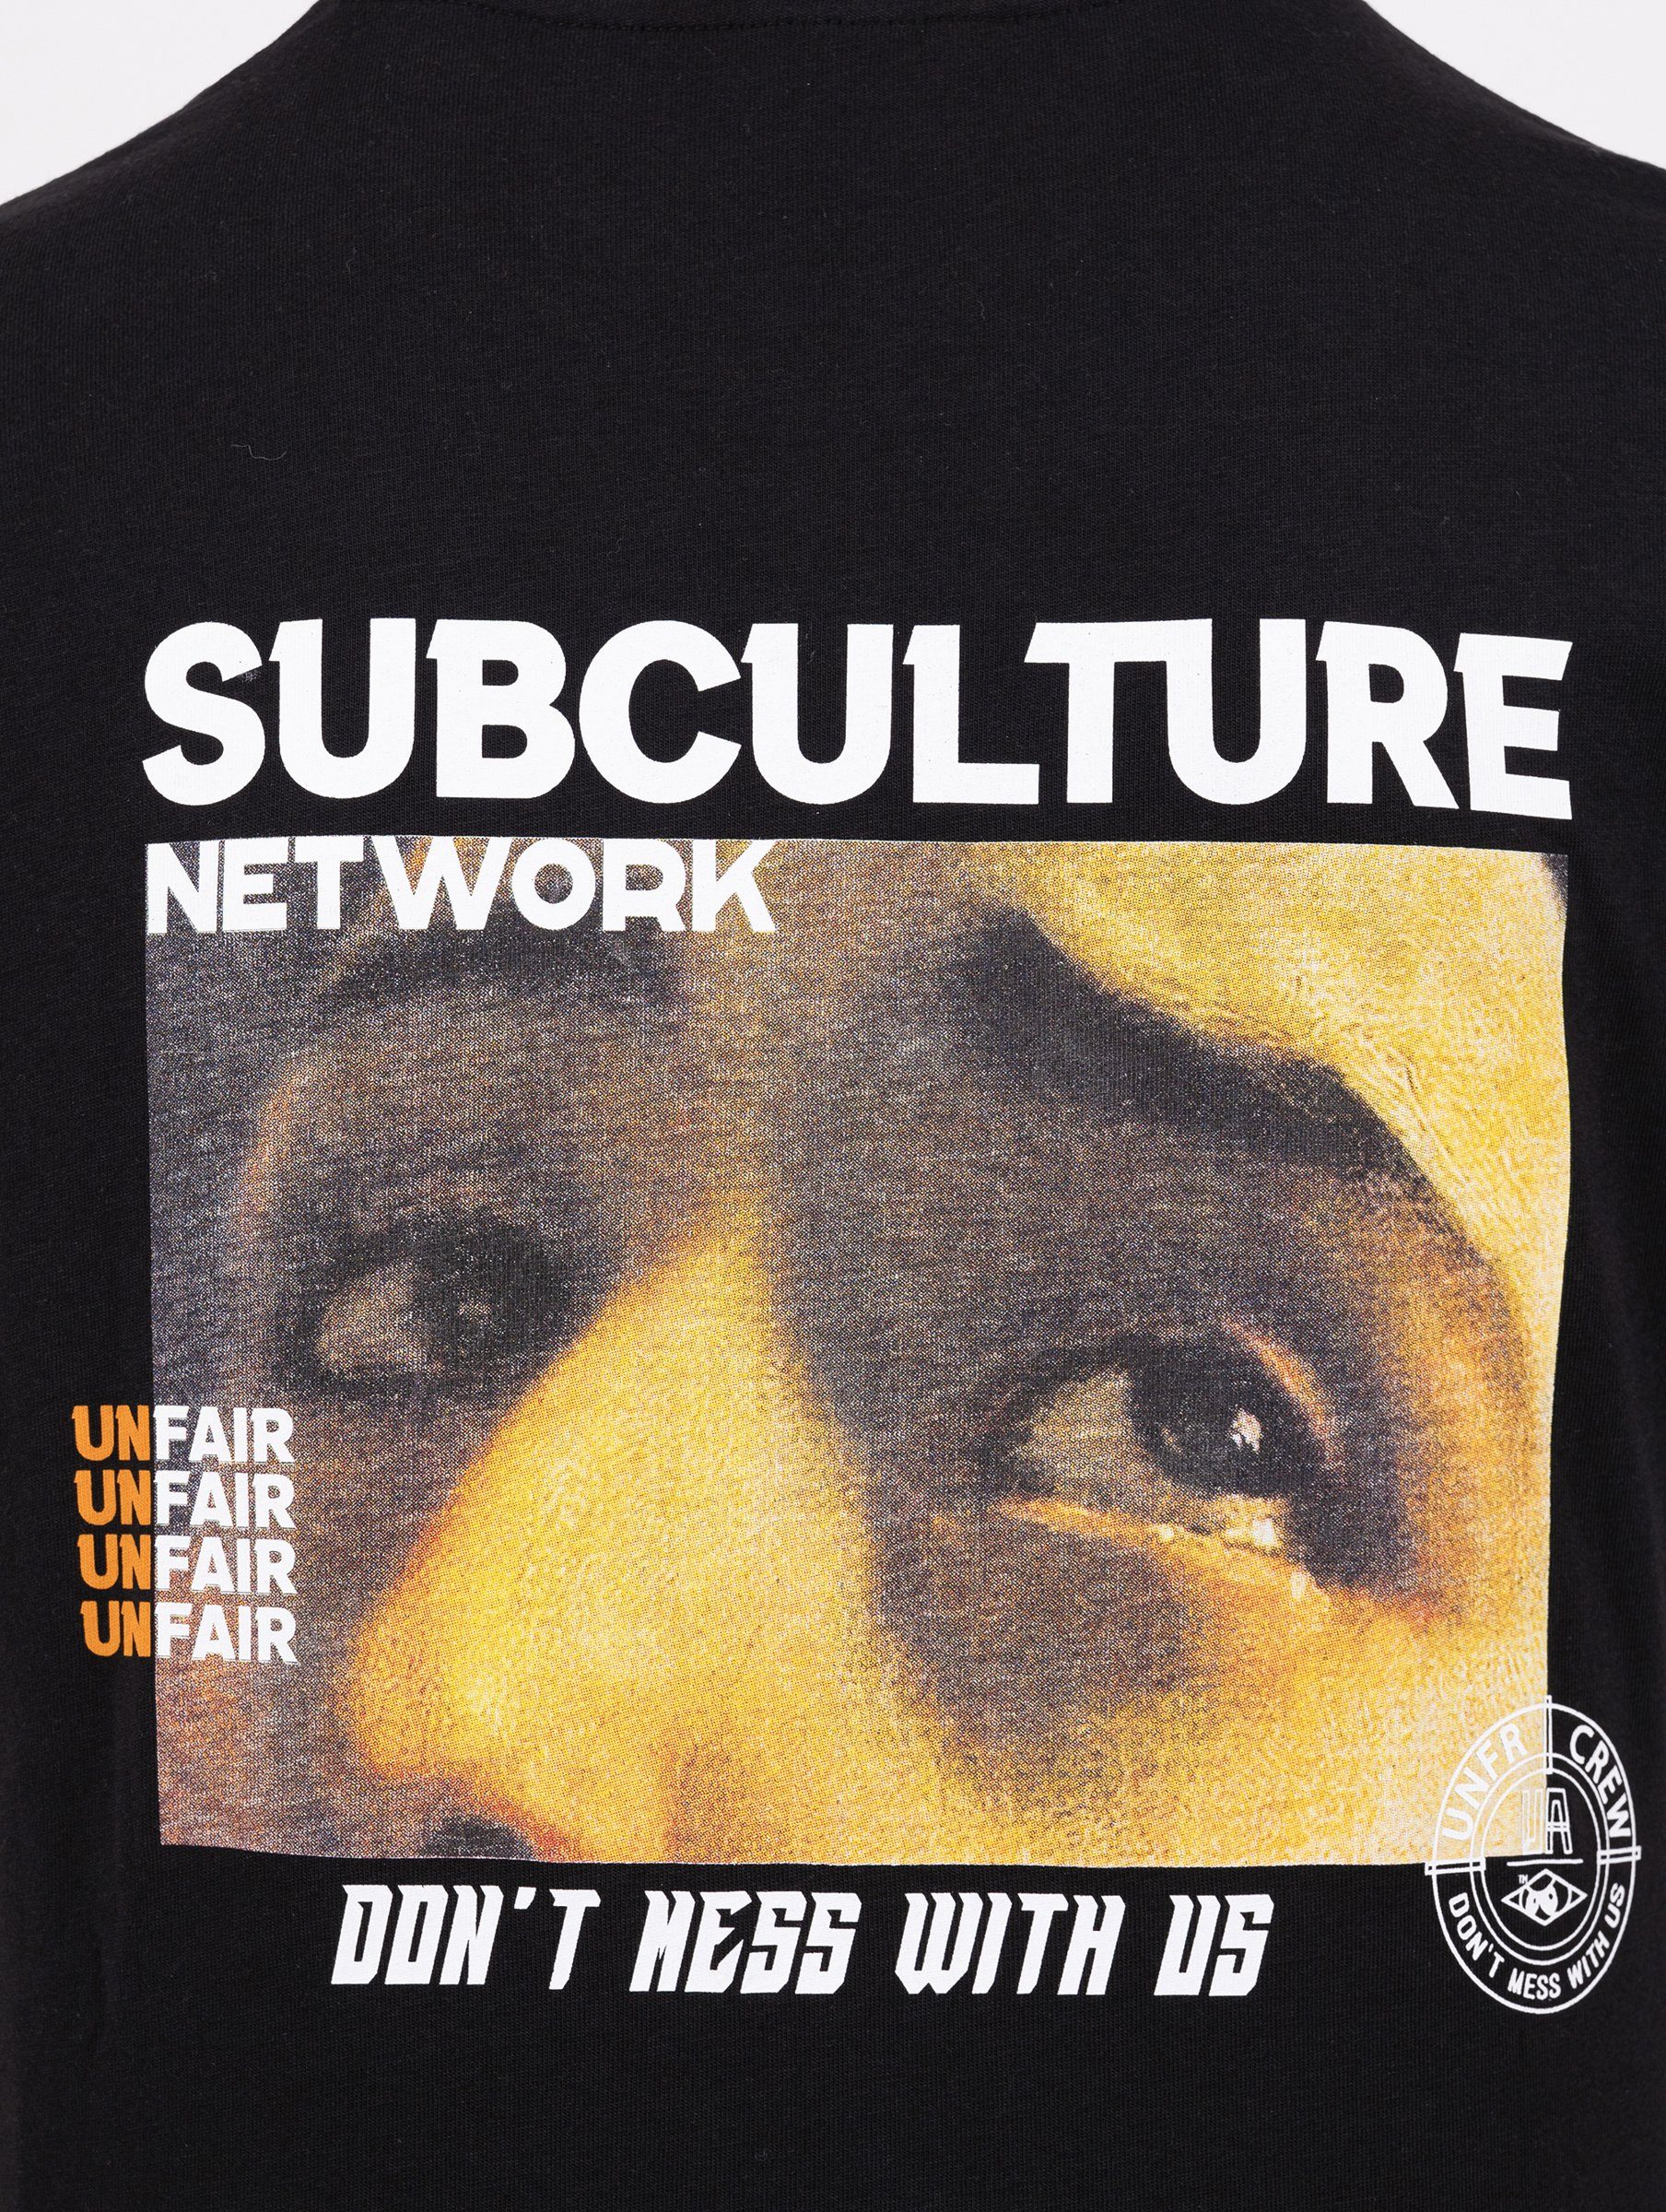 Athletics Athletics Network Herren Unfair black T-Shirt Subculture Unfair Adult T-Shirt